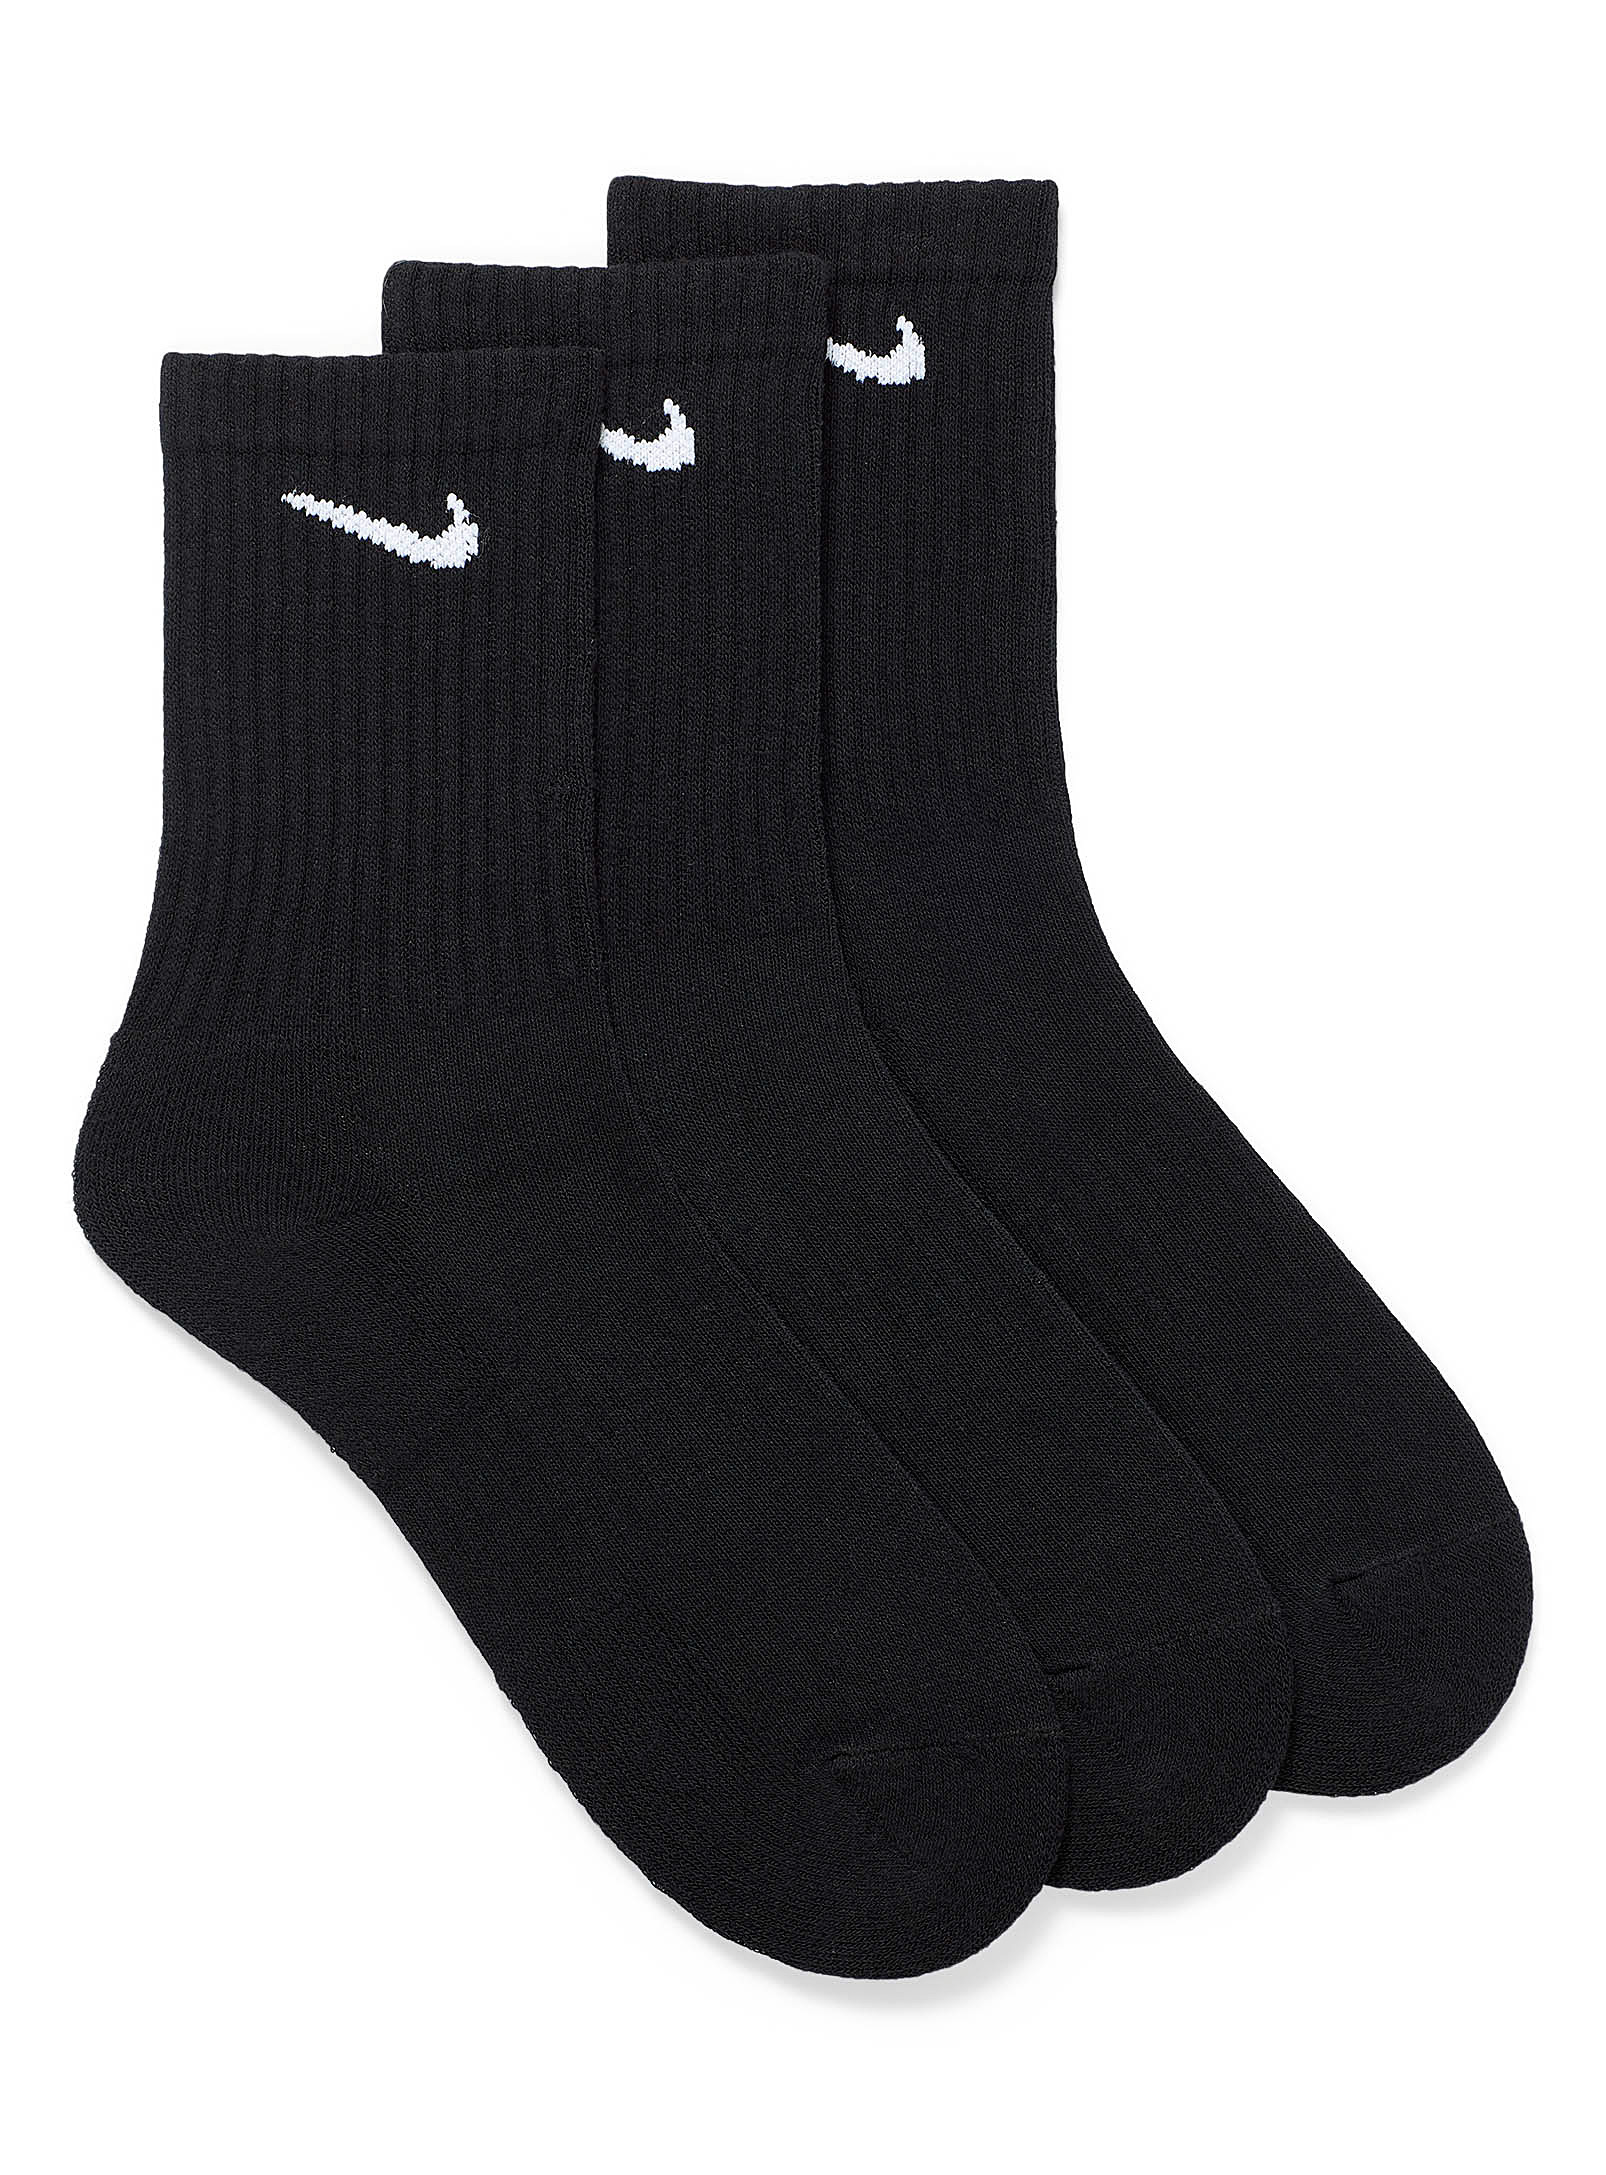 Nike Everyday Max Athletic Socks 3-pack In Black